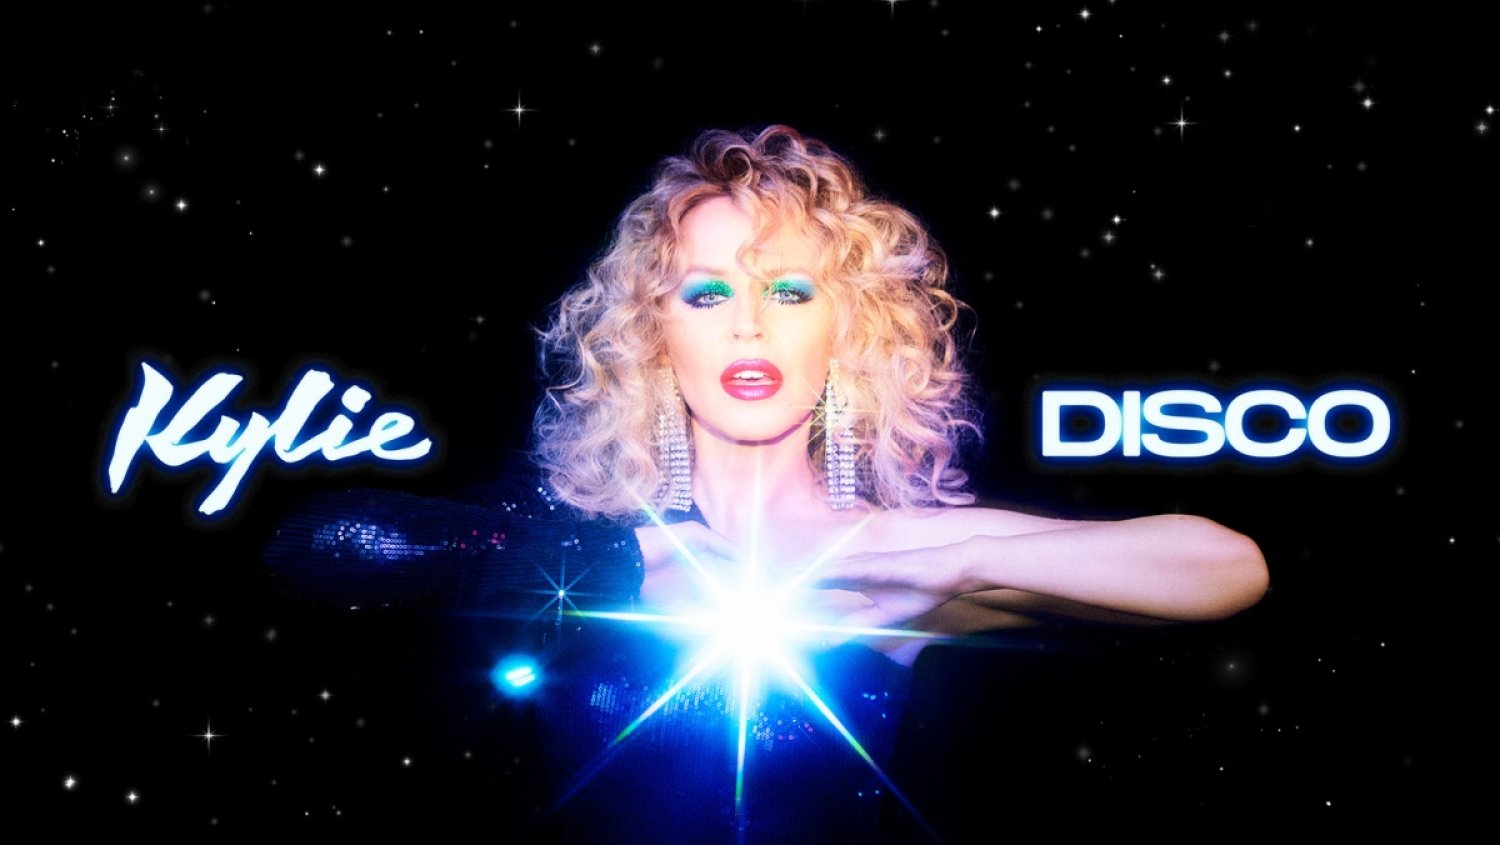 DISCO, le nouvel album de Kylie Minogue (Kylie Minogue)